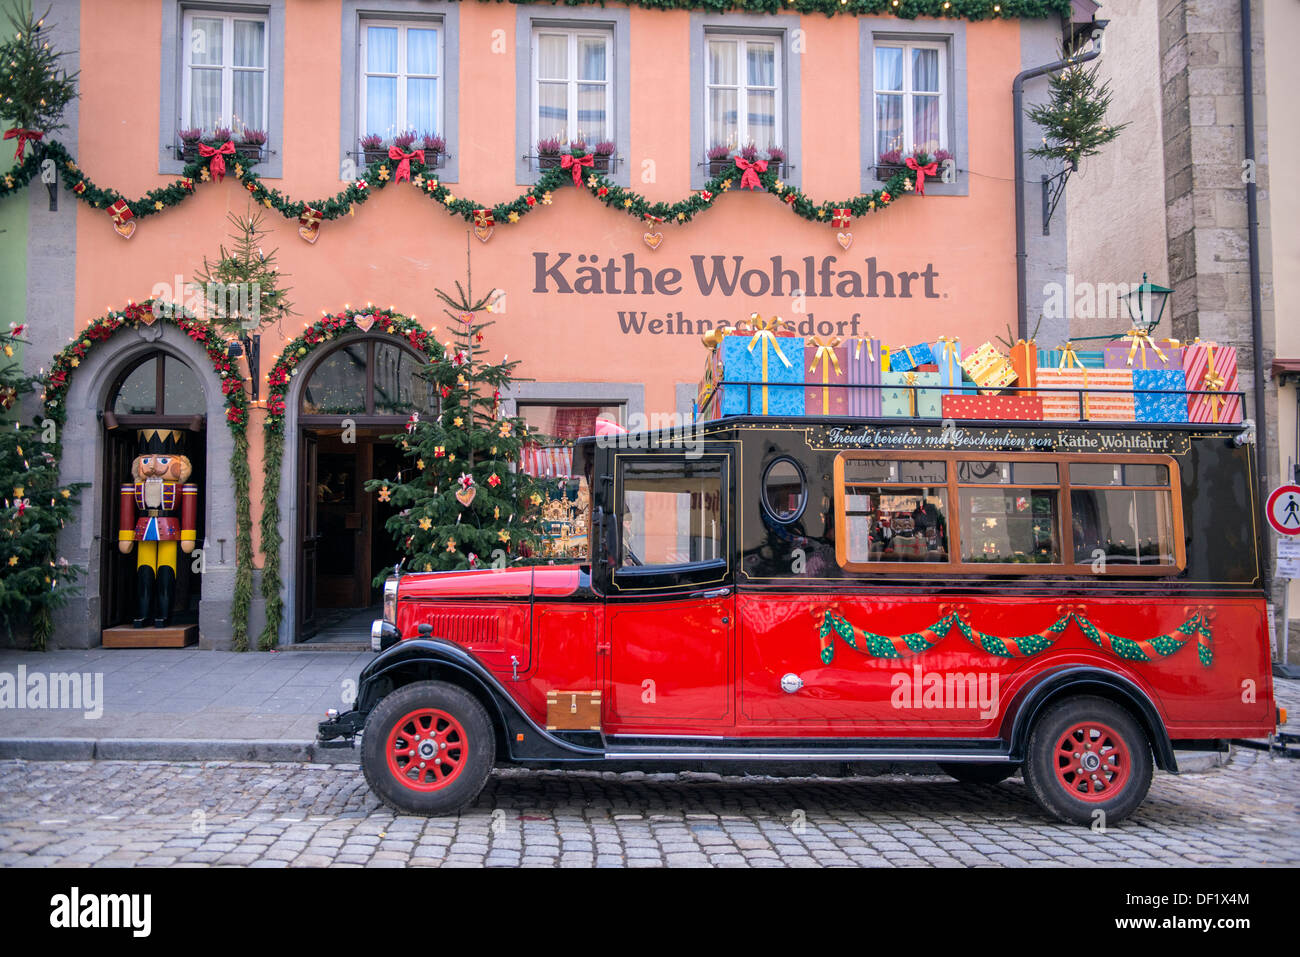 Camion rouge à l'extérieur du magasin Käthe Wohlfahrt, Rothenburg, Allemagne Banque D'Images